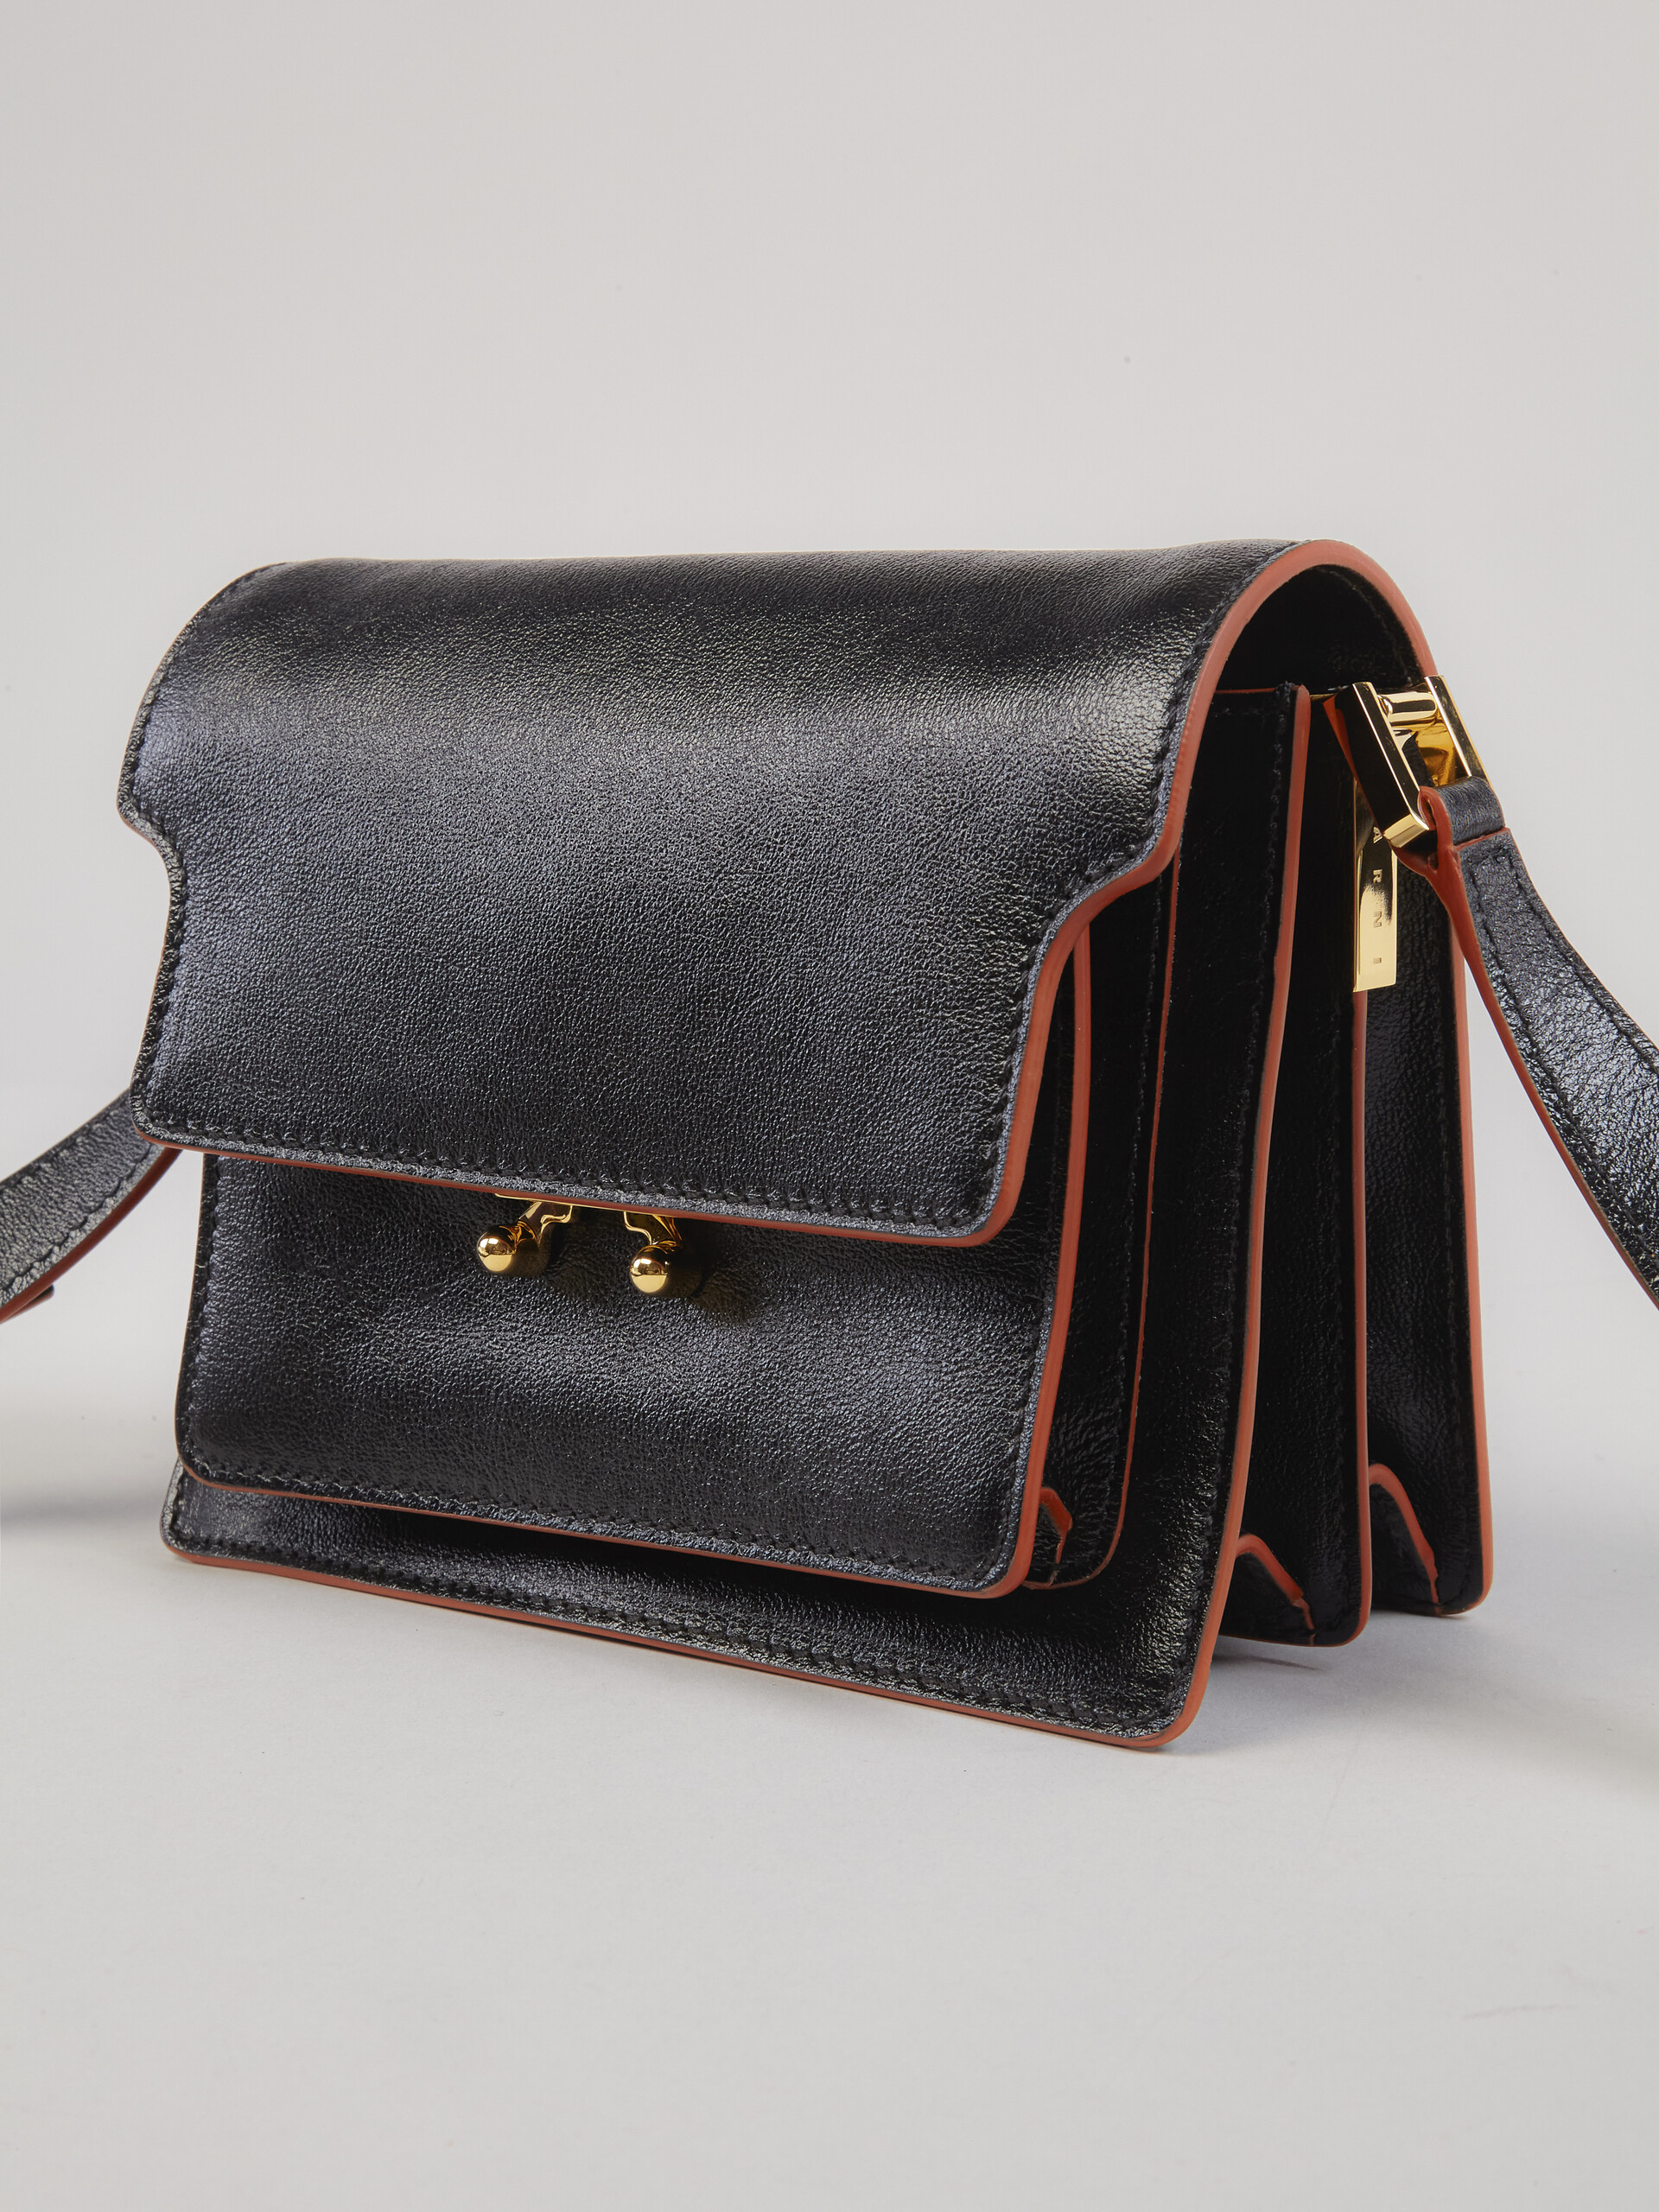 TRUNK SOFT bag mini in vitello bottalato nero - Borse a spalla - Image 4